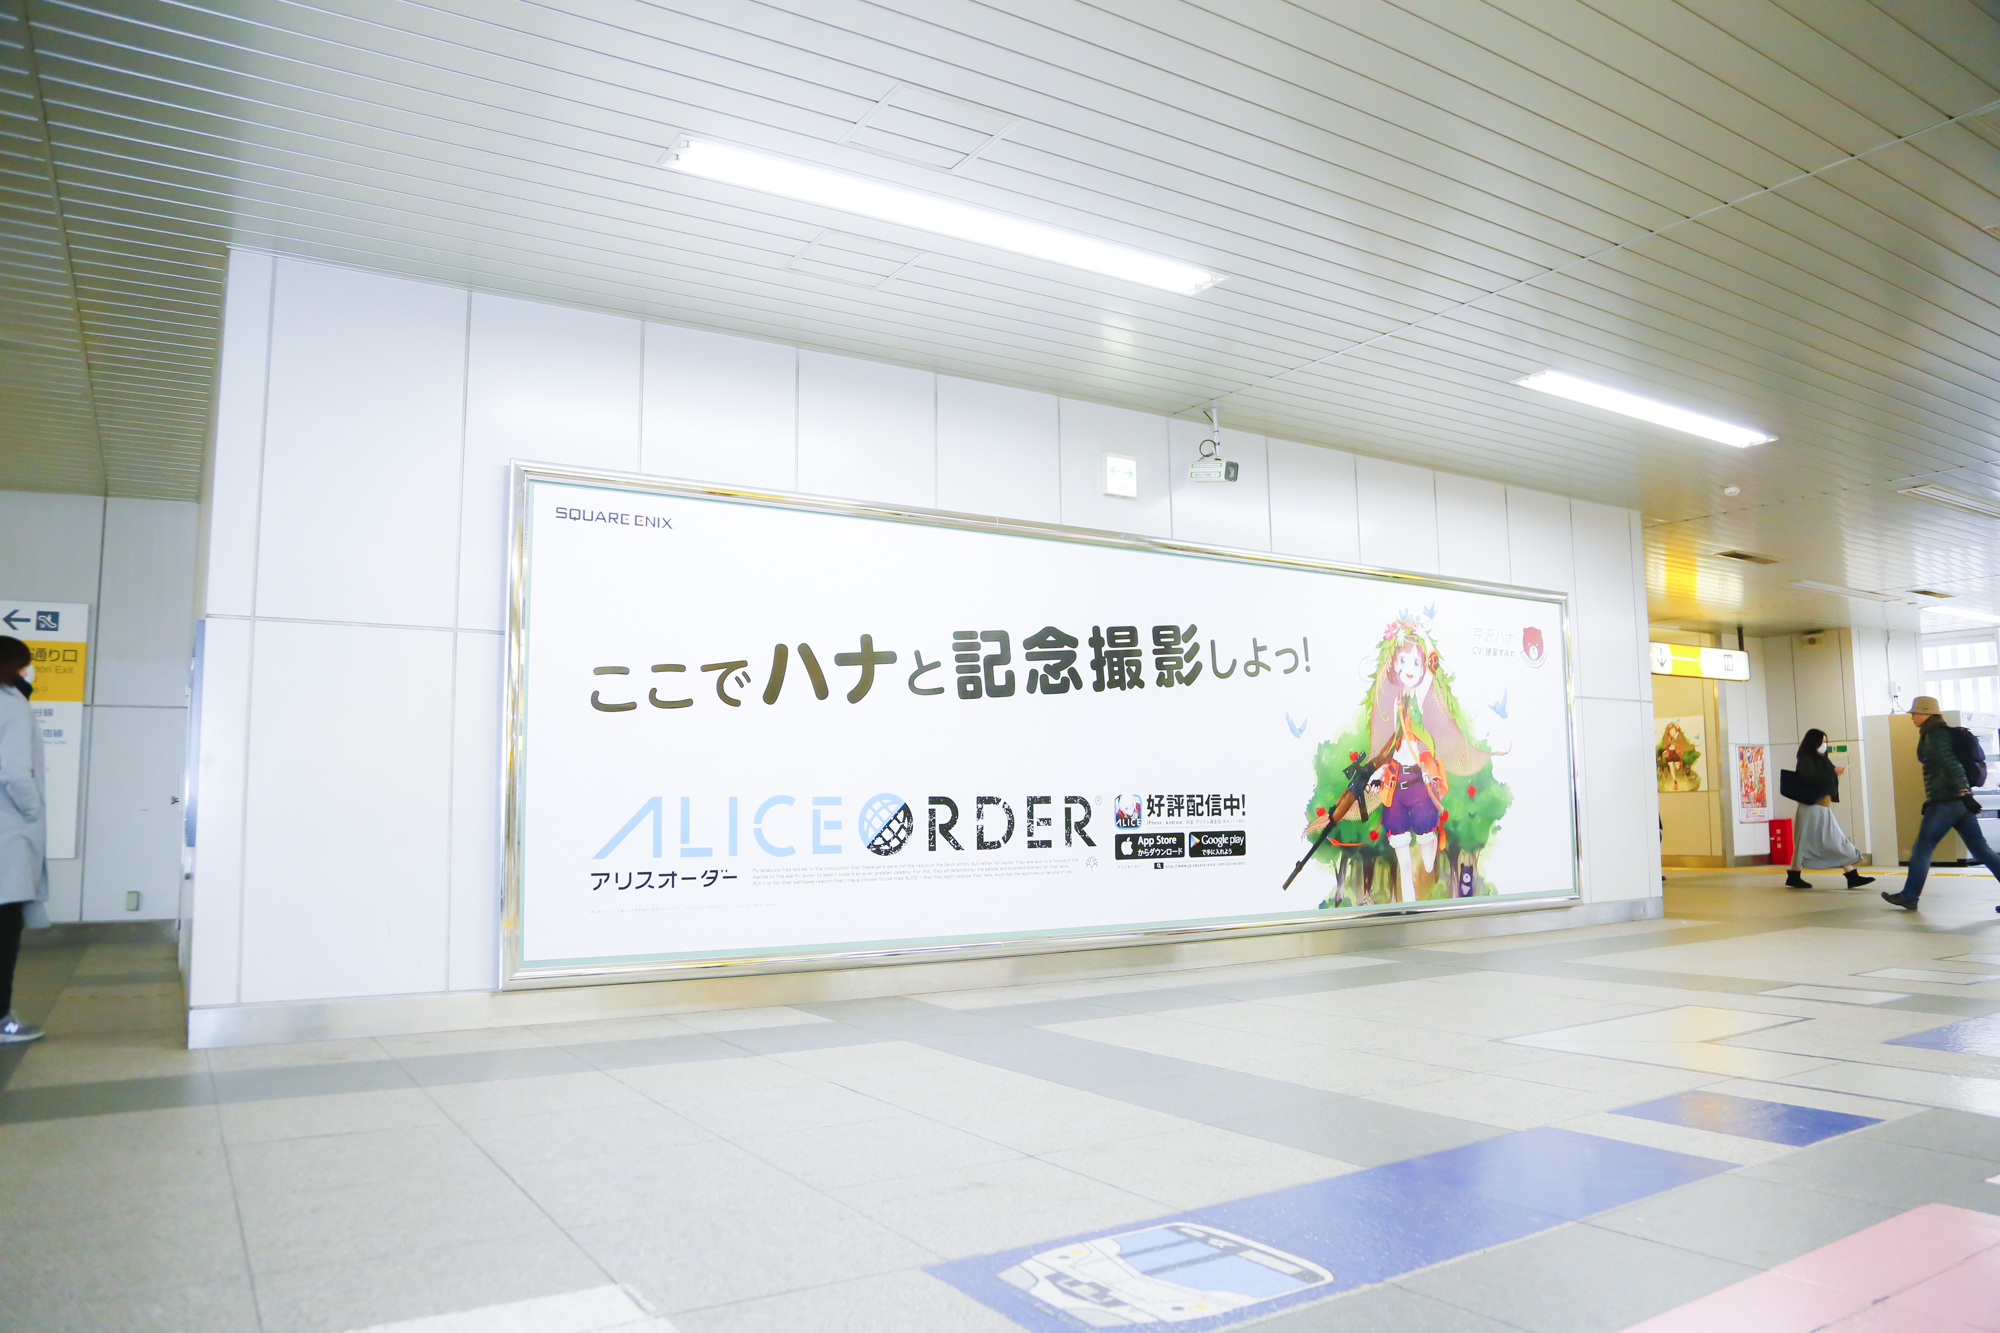 『ALICE ORDER』ハナちゃんと記念撮影しよう